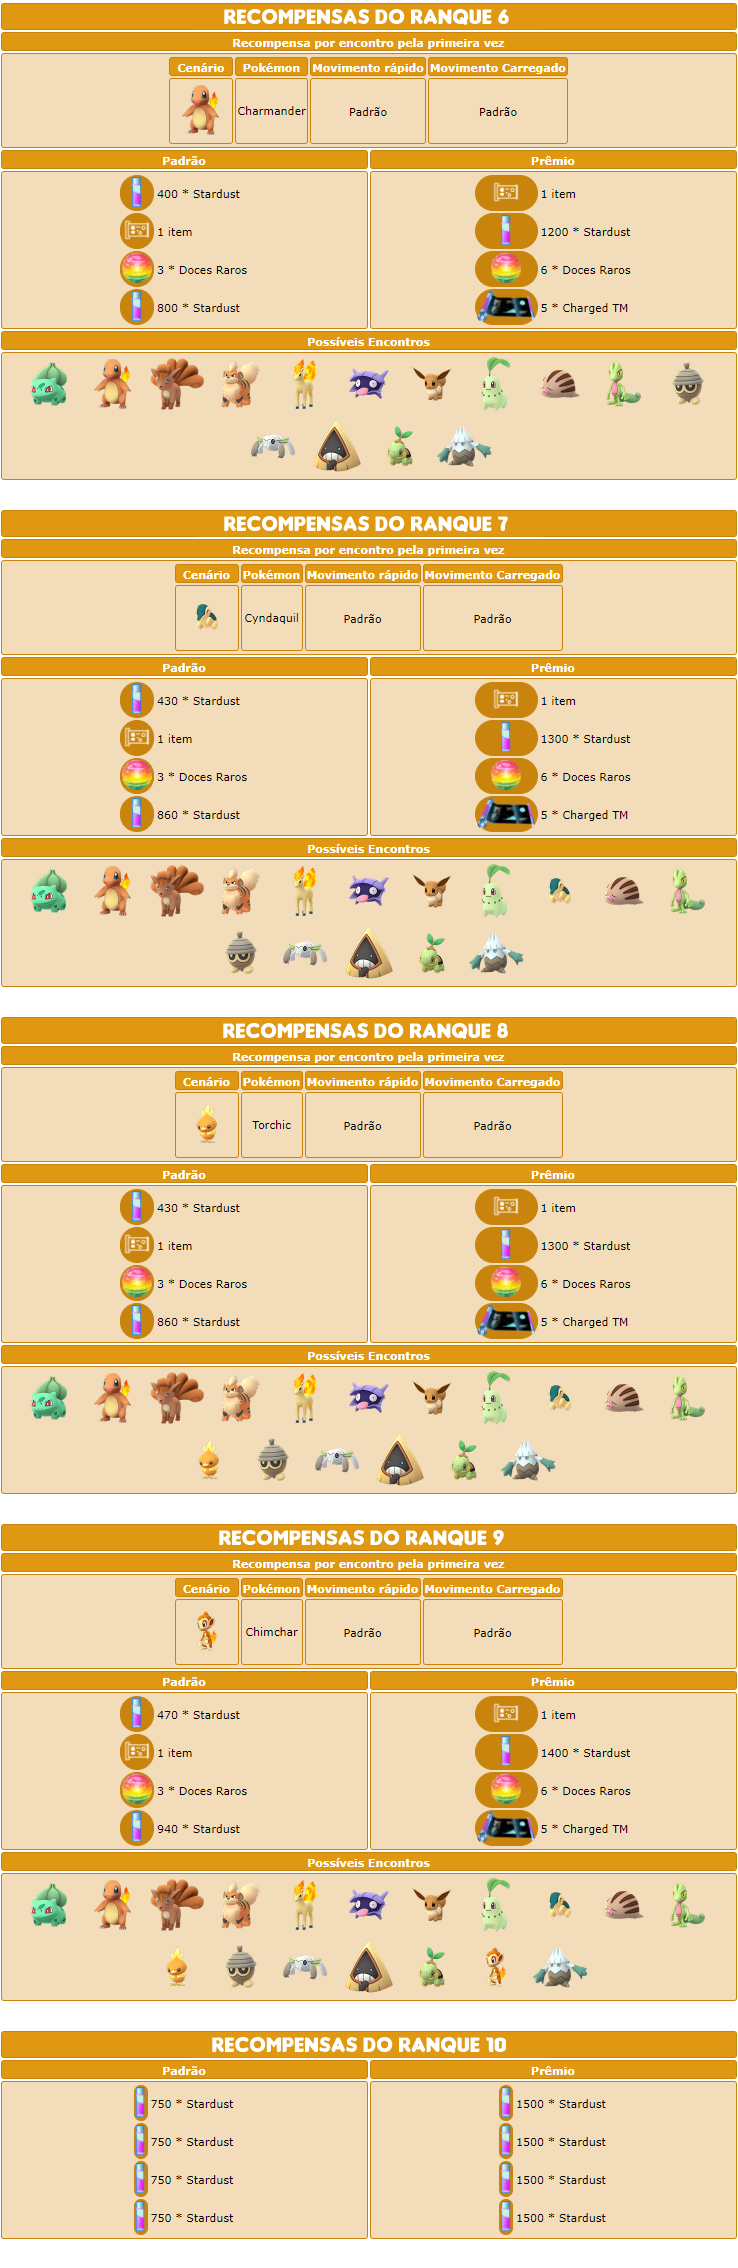 Liga de Batalha GO: 9ª temporada – Pokémon GO